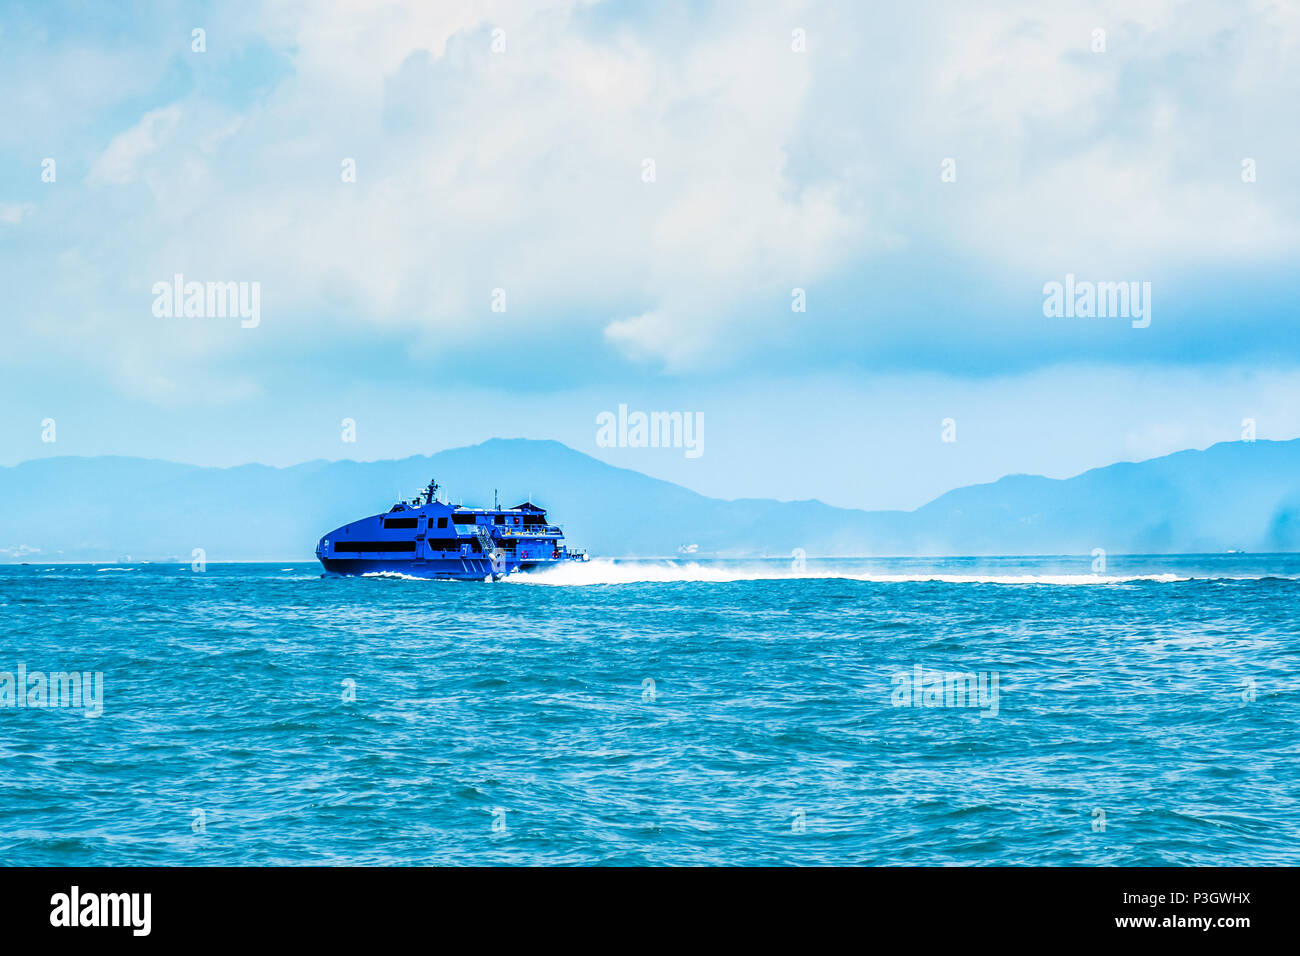 High speed Wasserstrahl Passagier nautische Schiff schnell bewegenden von Hongkong nach Macau (Asiatische spielende Center). Sonnigen Tag, bewölkter Himmel. Reisen nach Asien. Stockfoto